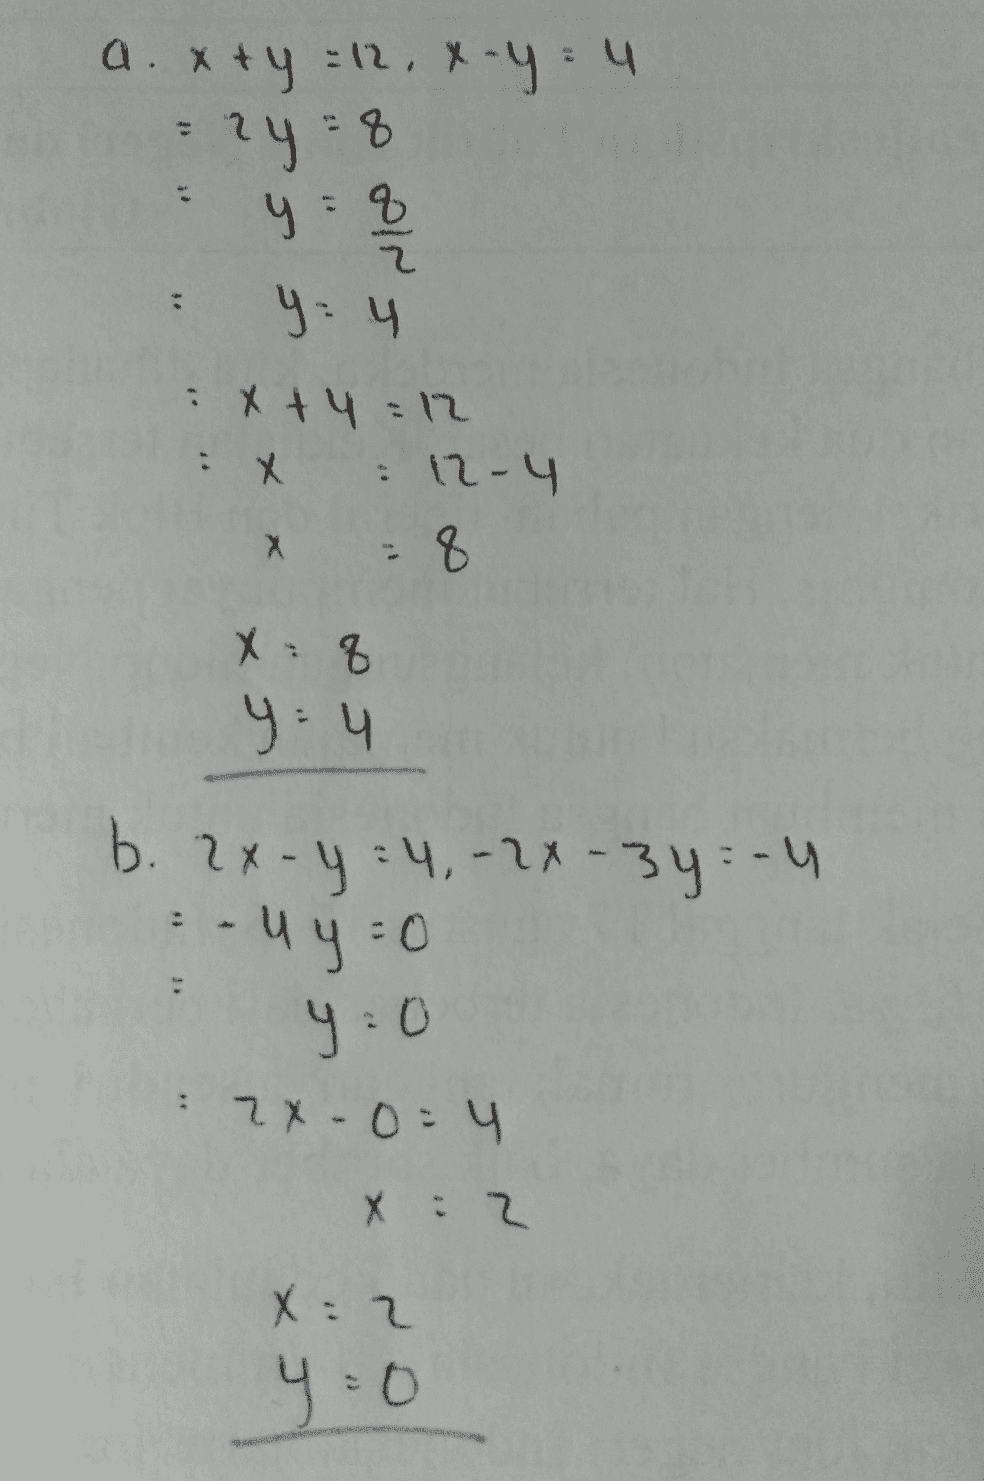 a. x+y = 12, x - y = 4 = 2y = 8 y = 8 q 8 3 2 2 hh y = 4 21= htx : x X = 12-4 X " X X : 8 y = 4 h b. 2x-y=4, -2x-3y - 4 - uy=0 y=0 : 2x0=4 h: X : 2 X=2 y20 